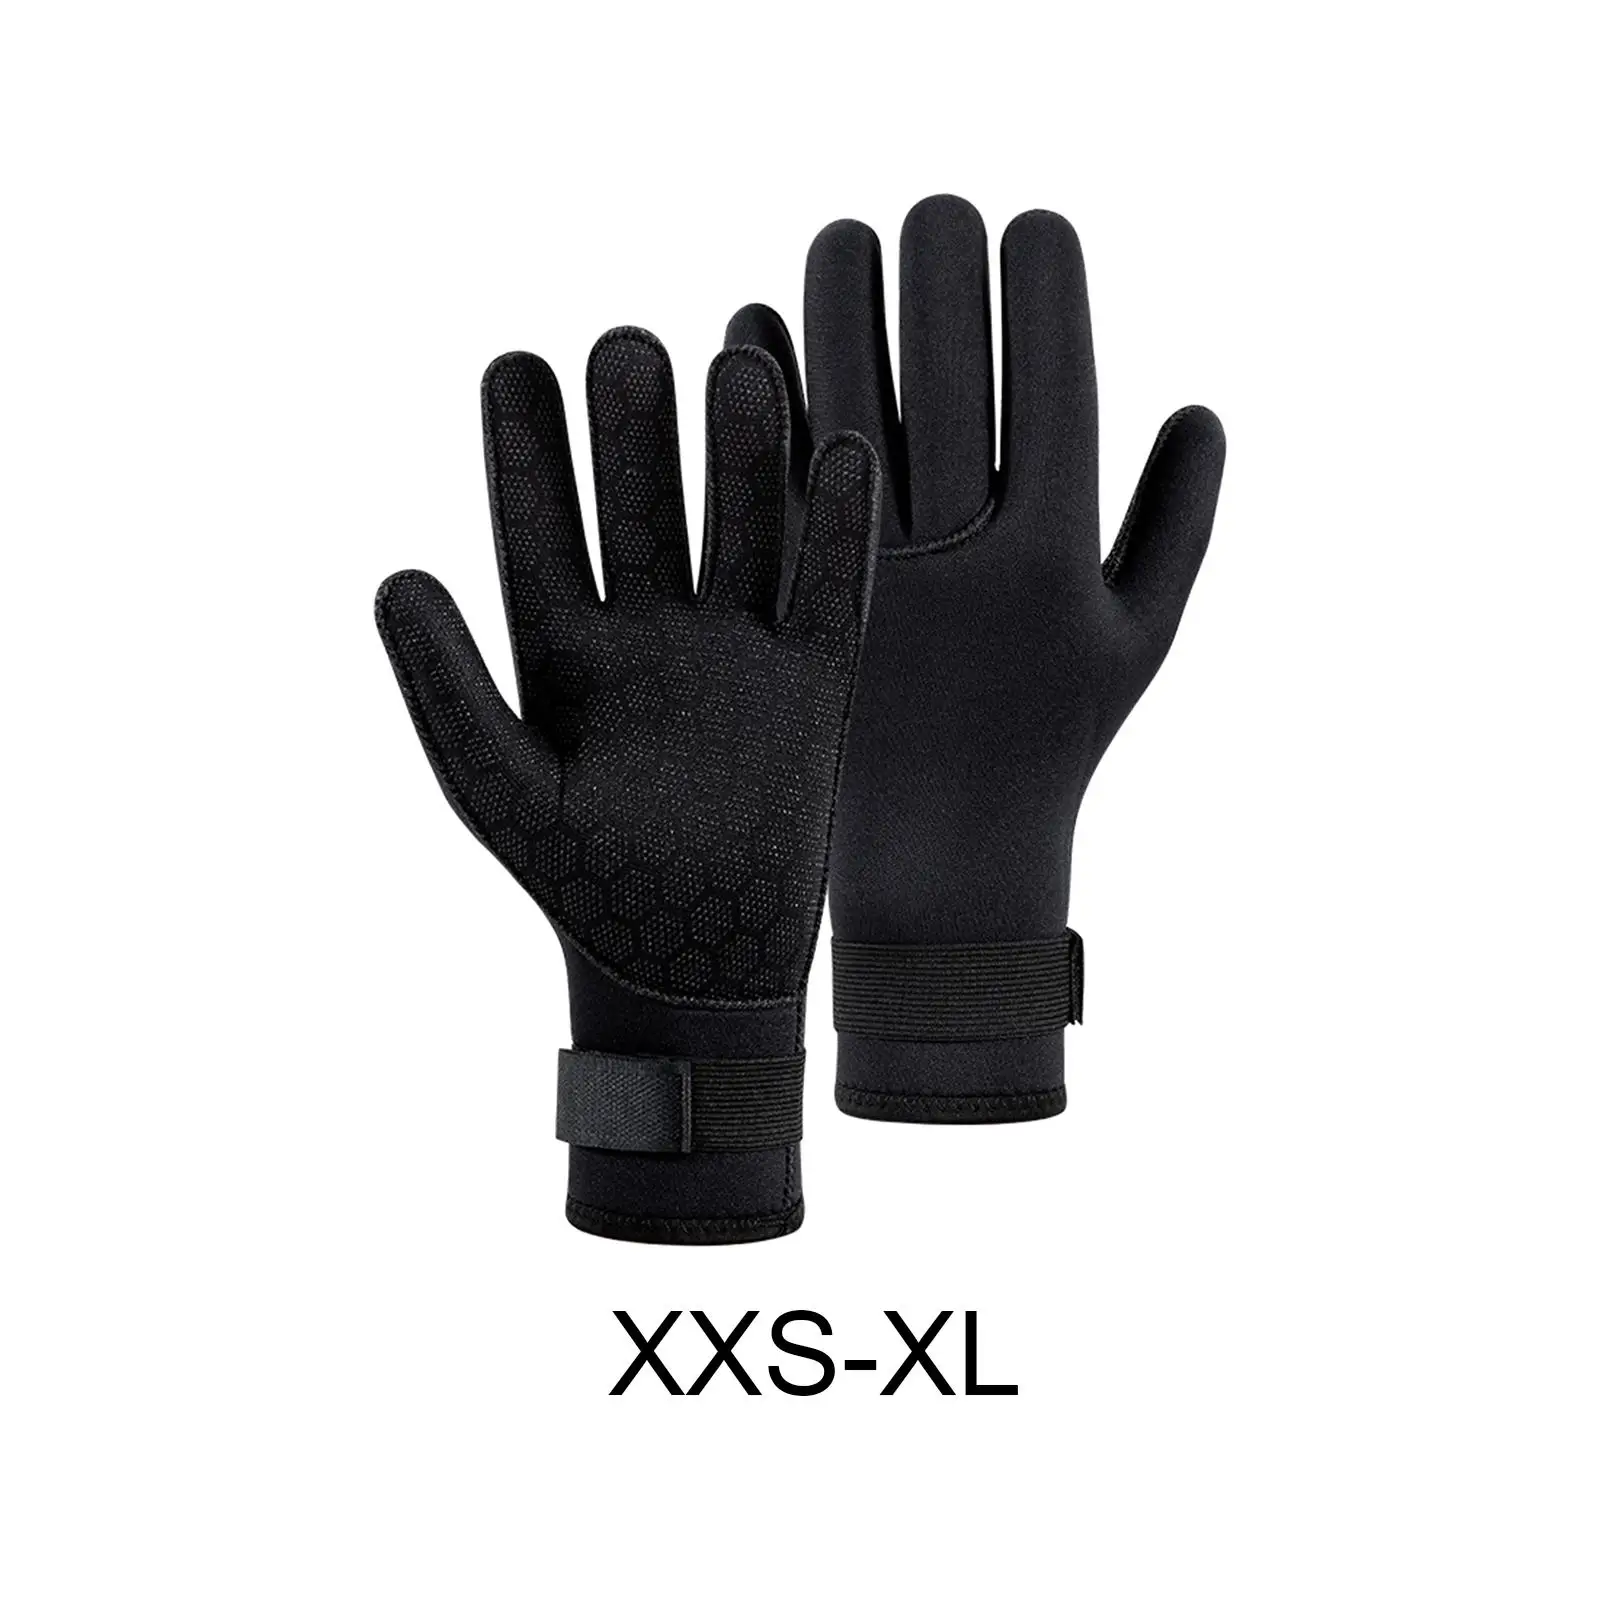 Diving Gloves Wetsuit Gloves Wear Resistant Comfortable 3mm Neoprene Gloves for Men Women Snorkeling Canoe Kayaking Underwater